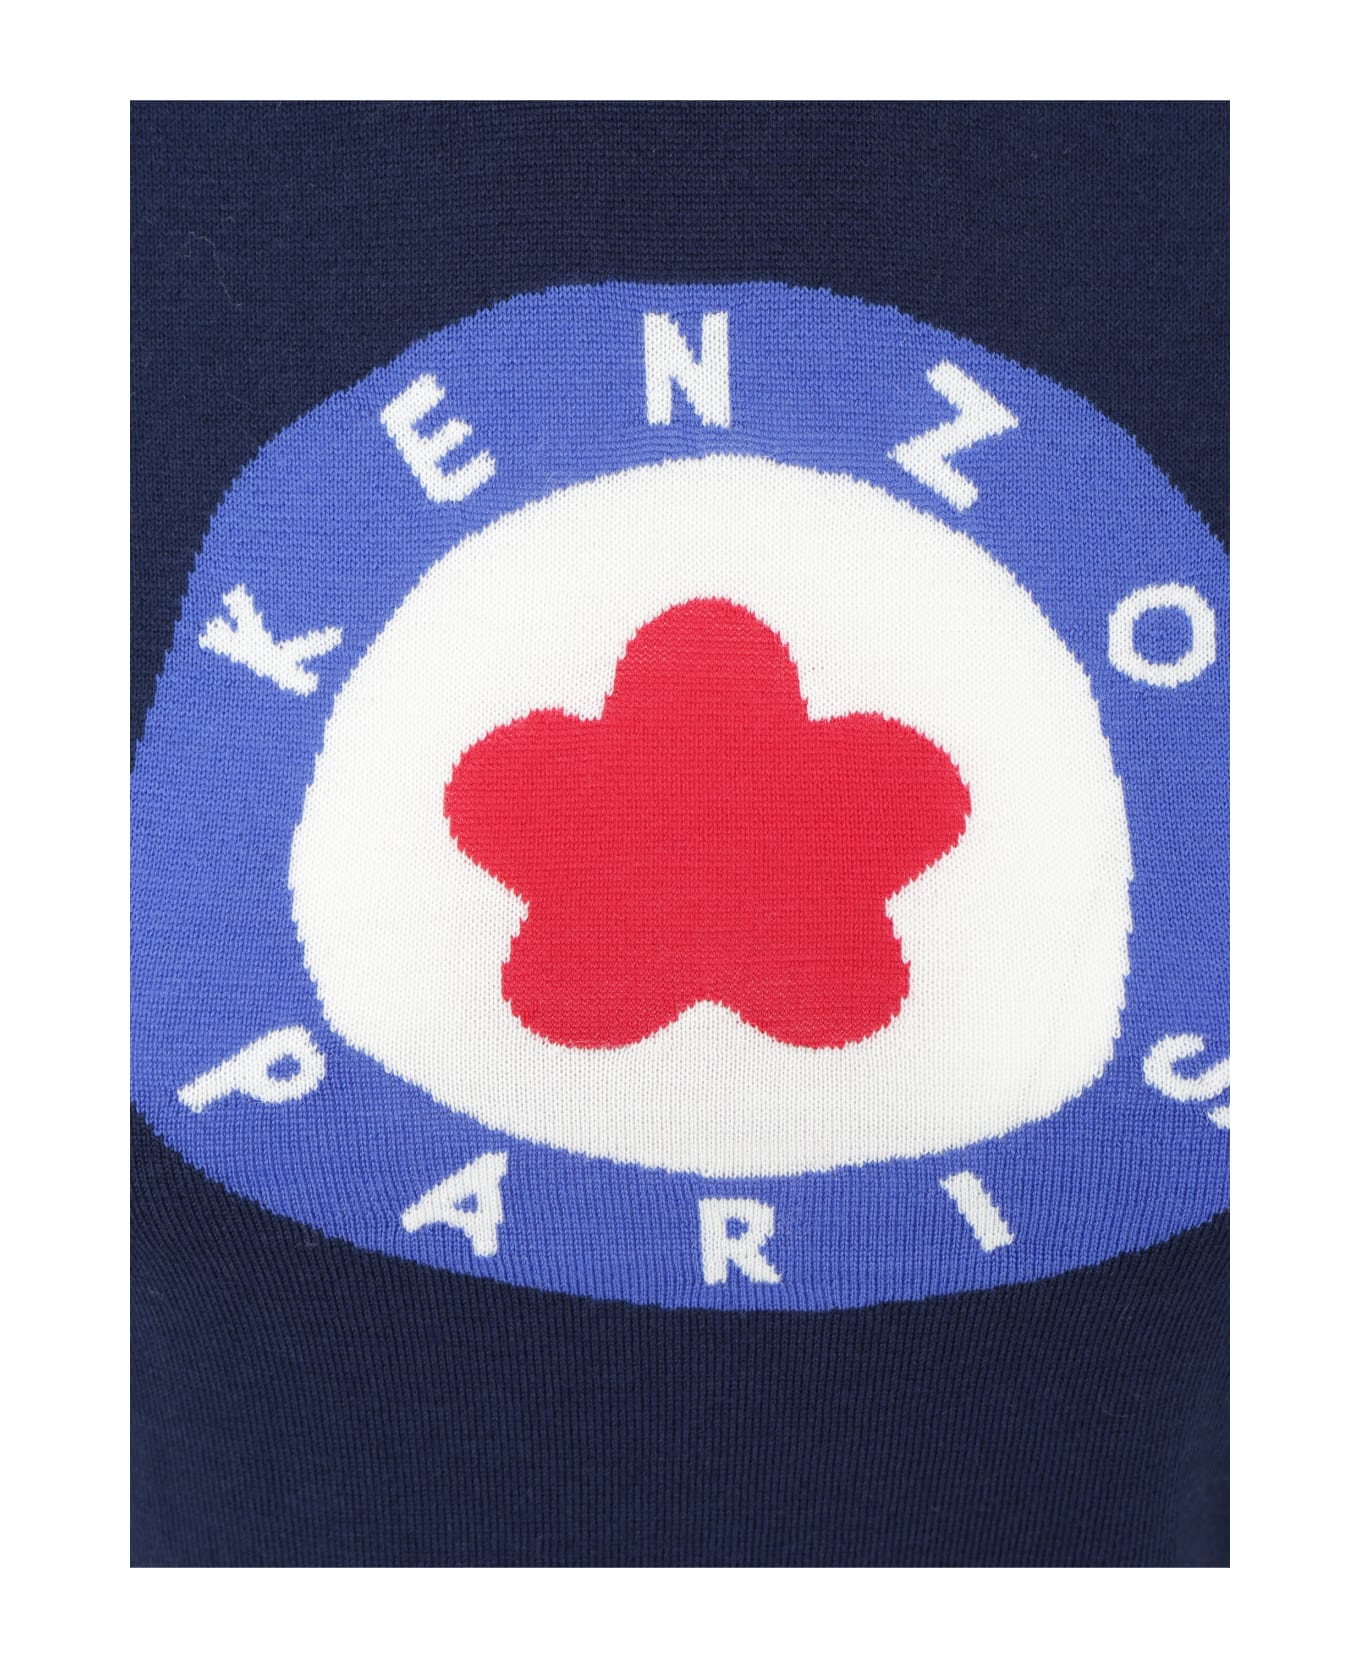 Kenzo Wool Turtleneck Sweater - Bleu Nuit